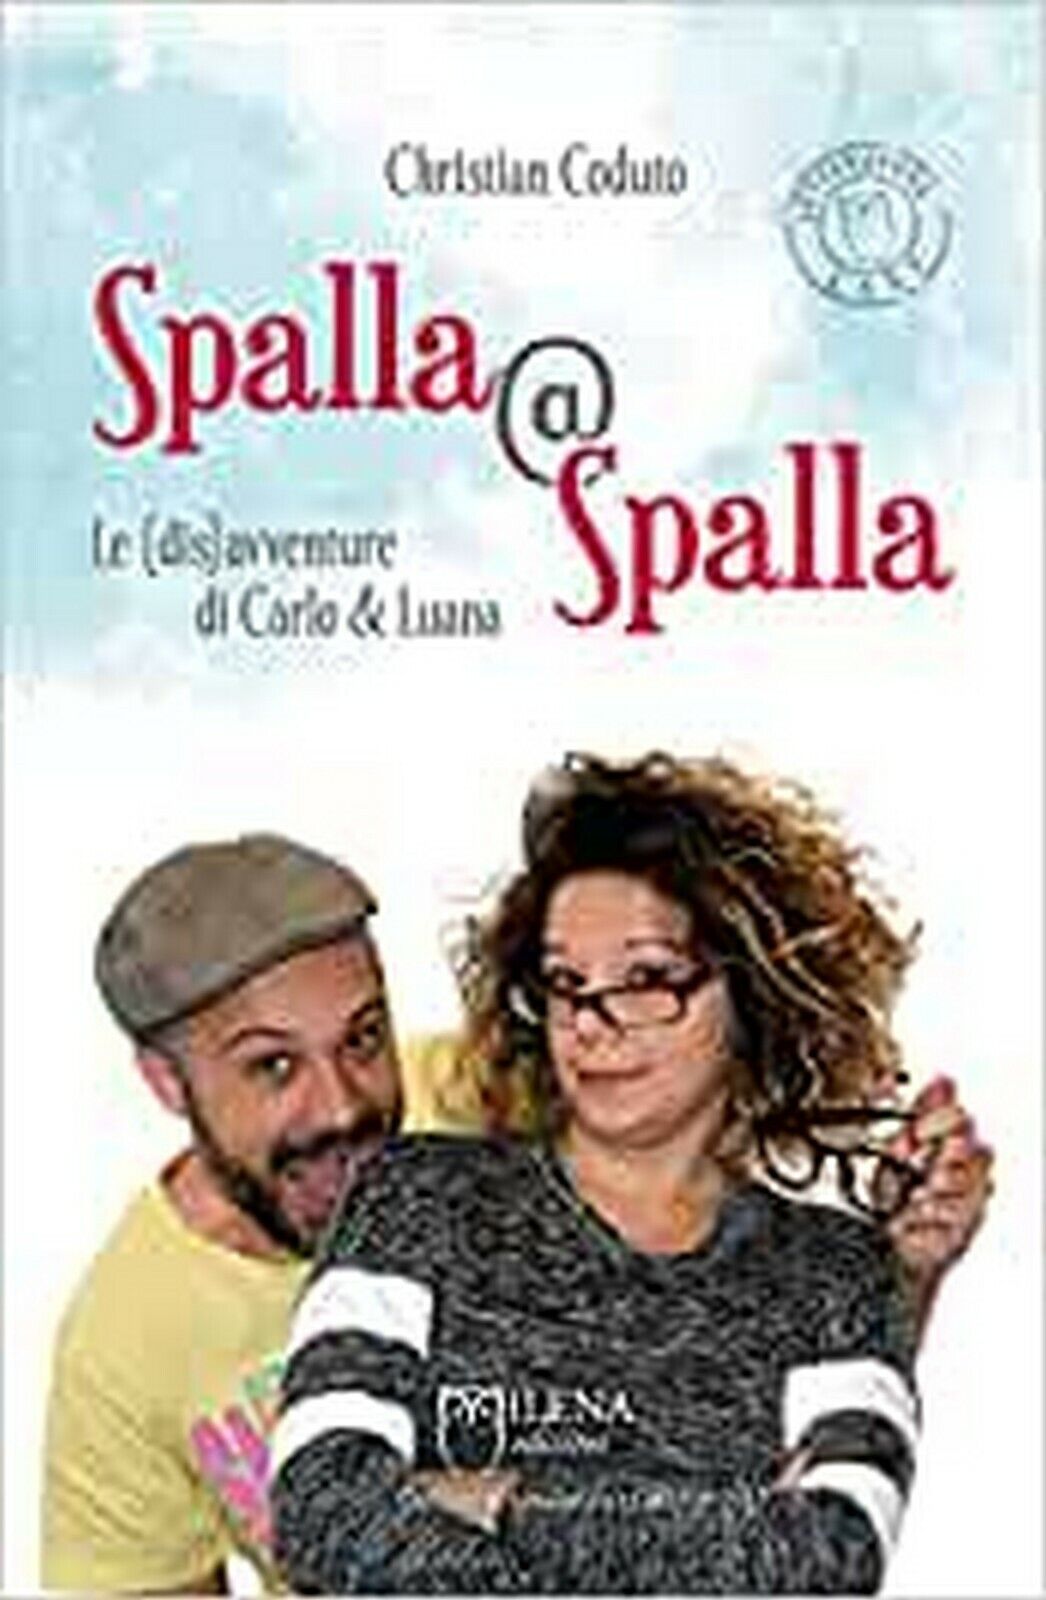 Spalla@Spalla. Le(dis)avventure di Carlo e Luana  di Christian Coduto,  Officina